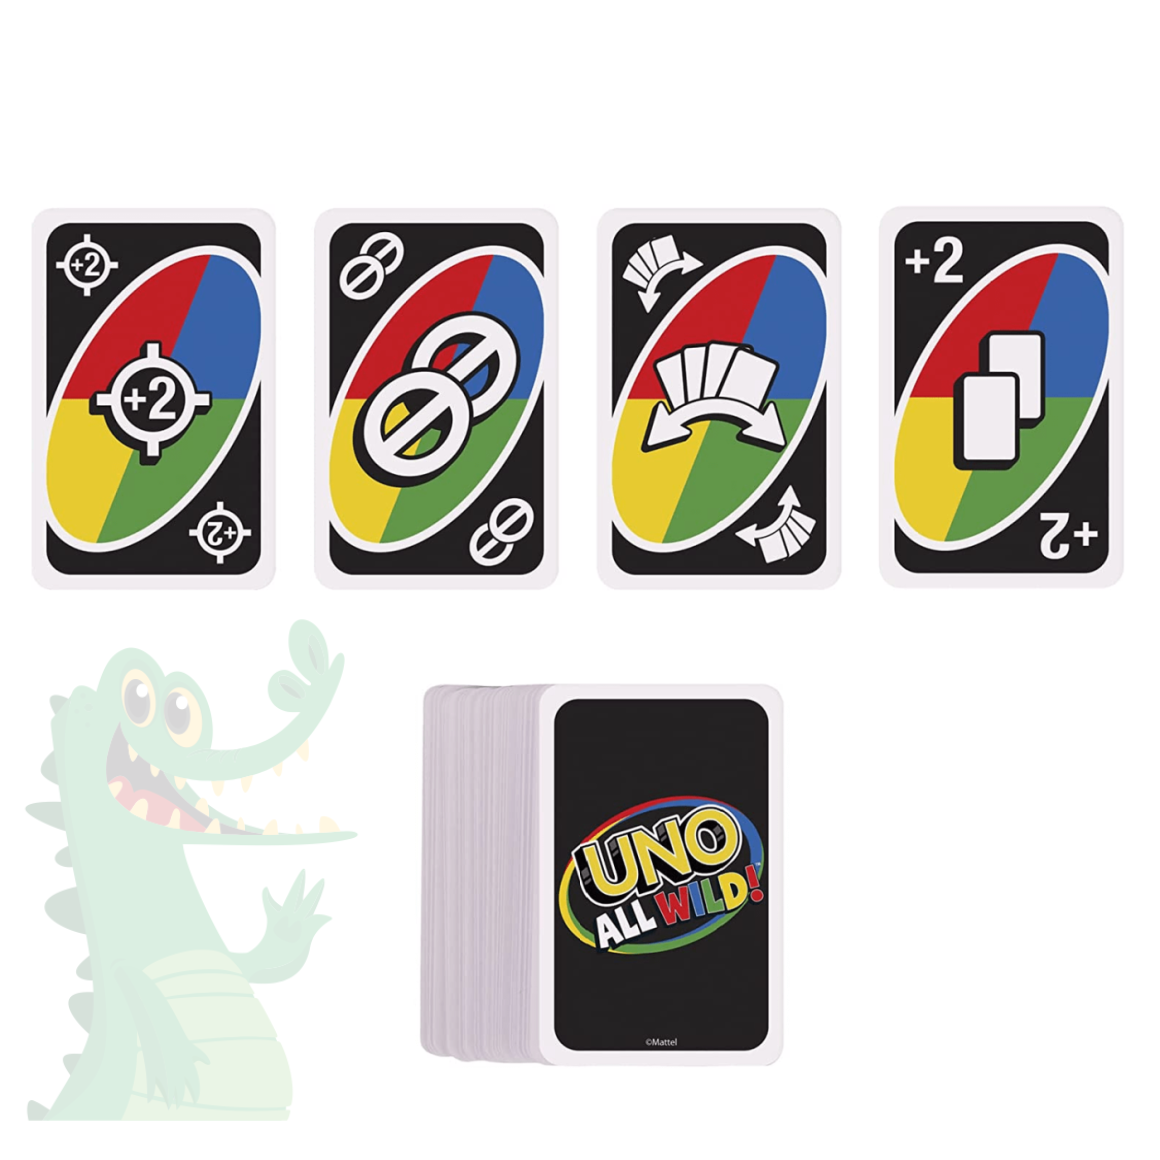 Jogo Uno Reverse: Promoções